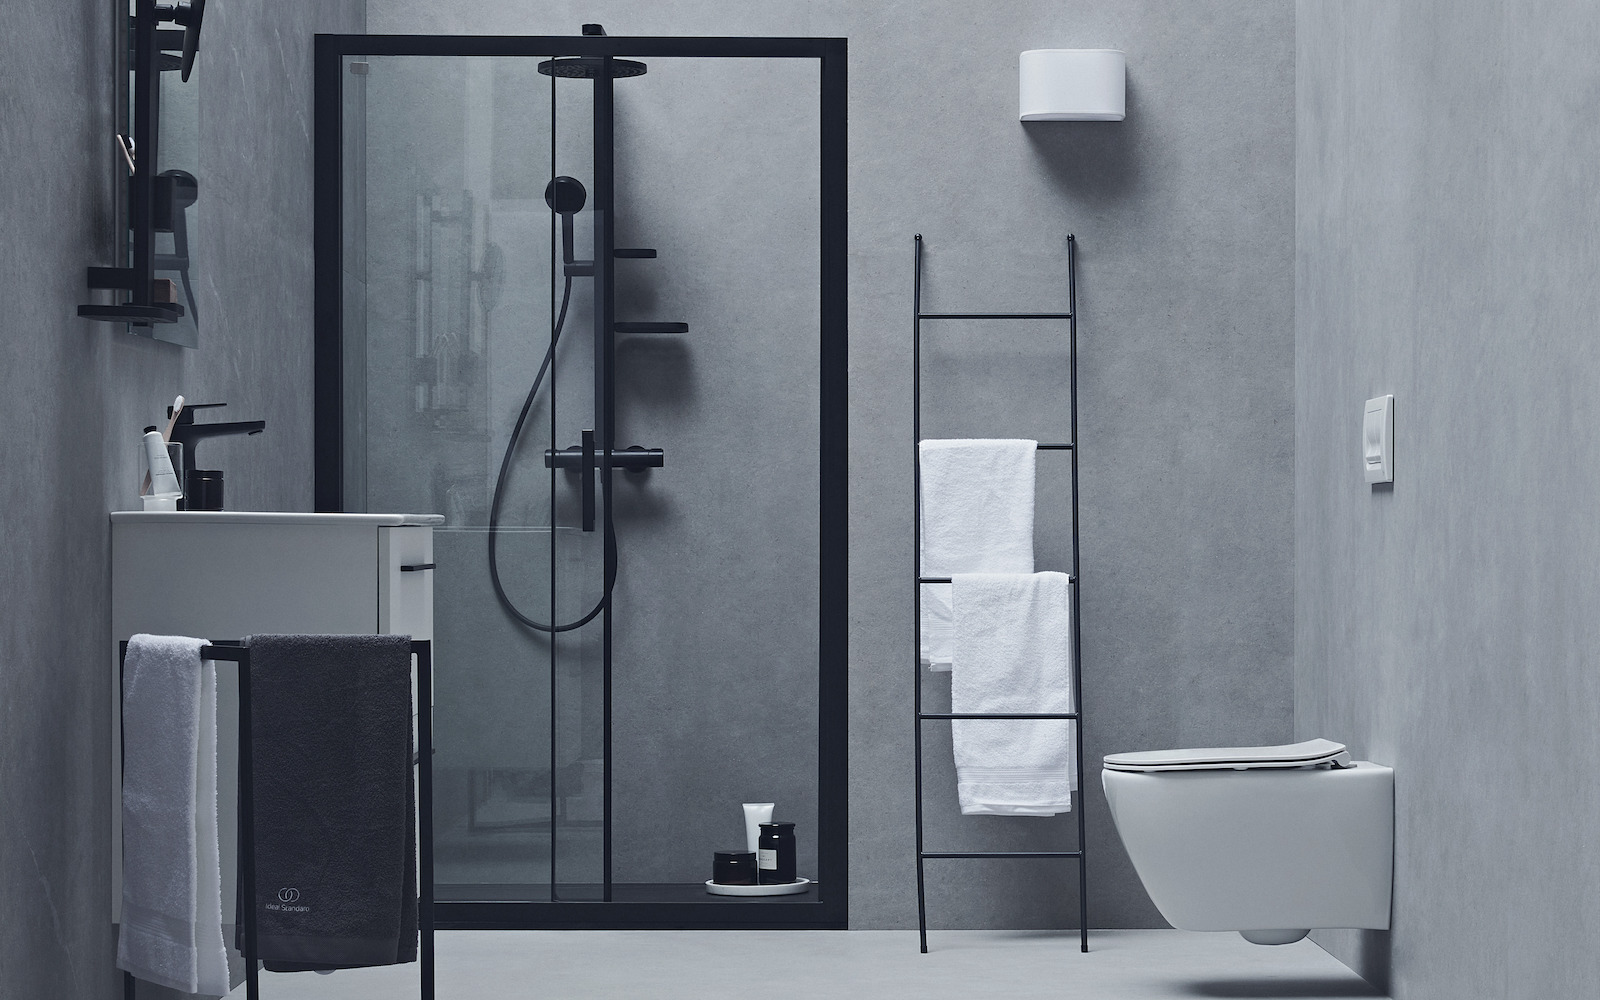 A grey and black modern bathroom setting